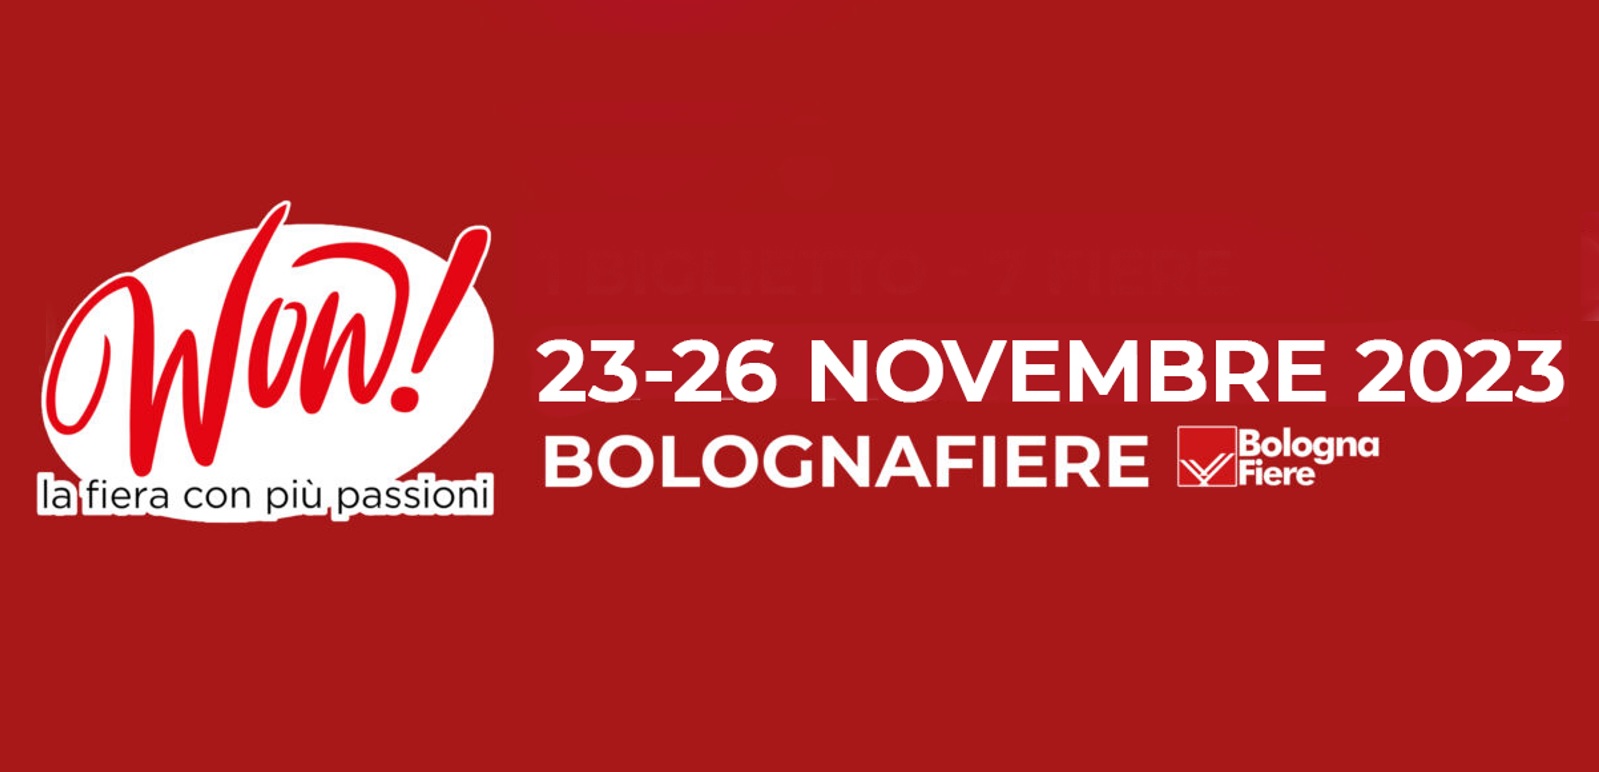 WOW Bologna 2023: l’evento straordinario che vi lascerà a bocca aperta